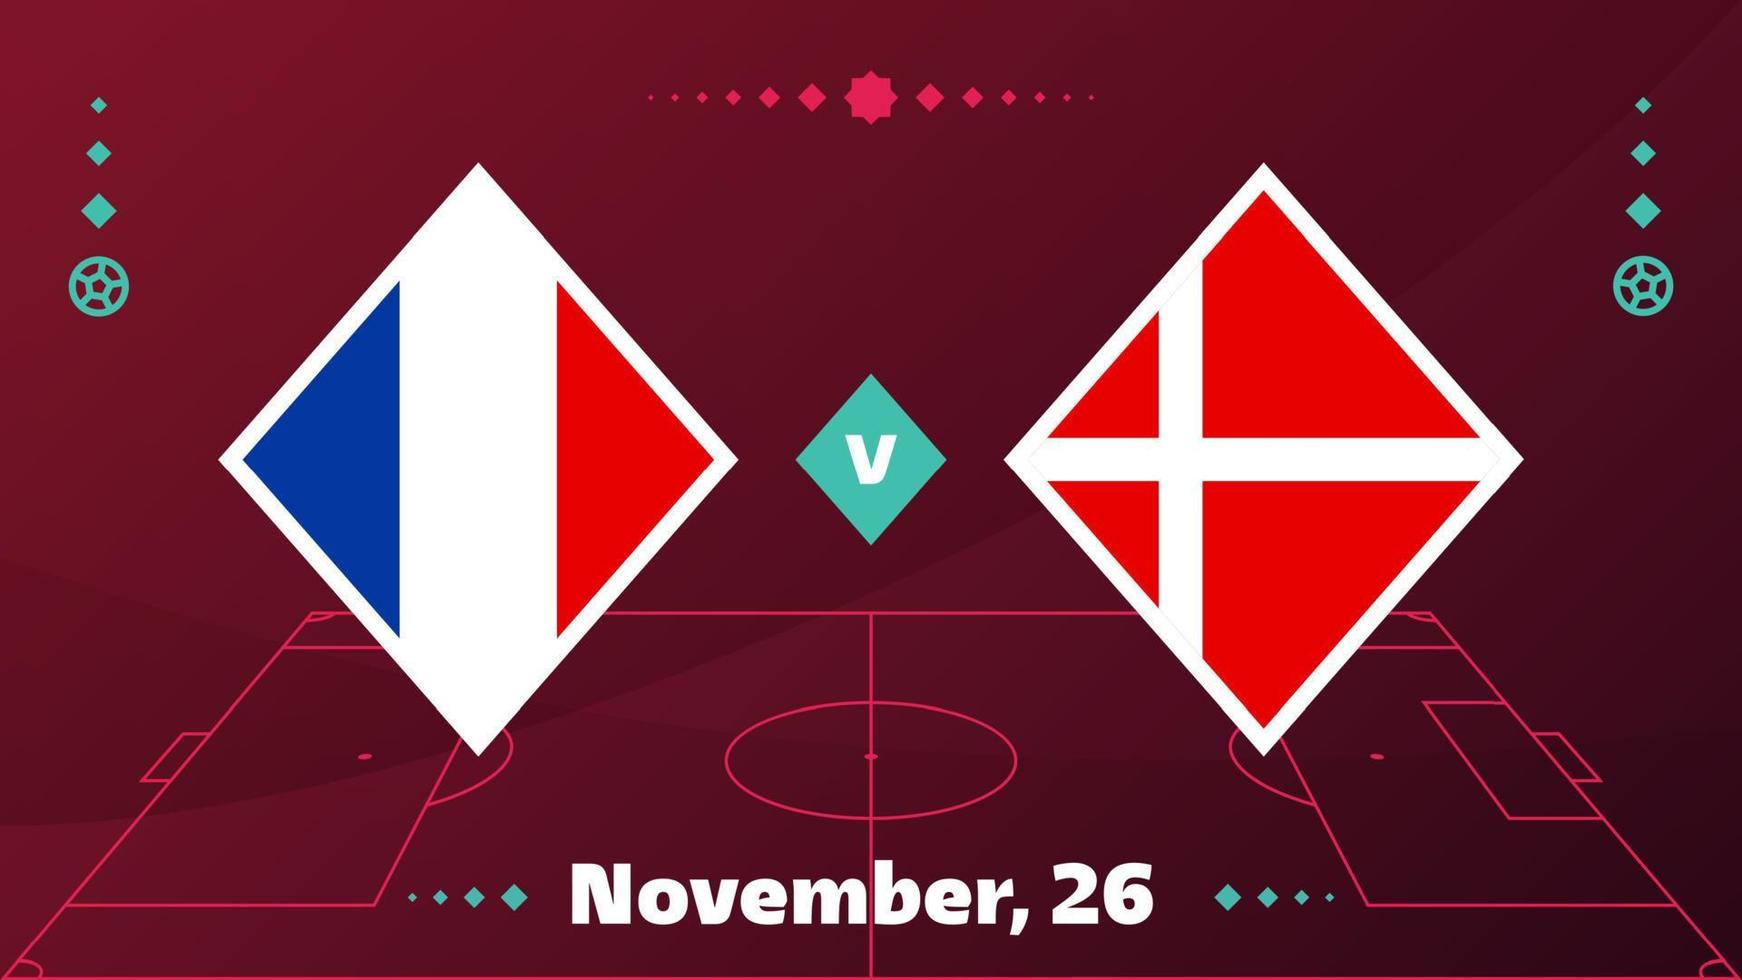 Frankrike vs Danmark, fotboll 2022, grupp d. världsfotbollstävling mästerskap match kontra lag intro sport bakgrund, mästerskap konkurrens sista affisch, vektorillustration. vektor